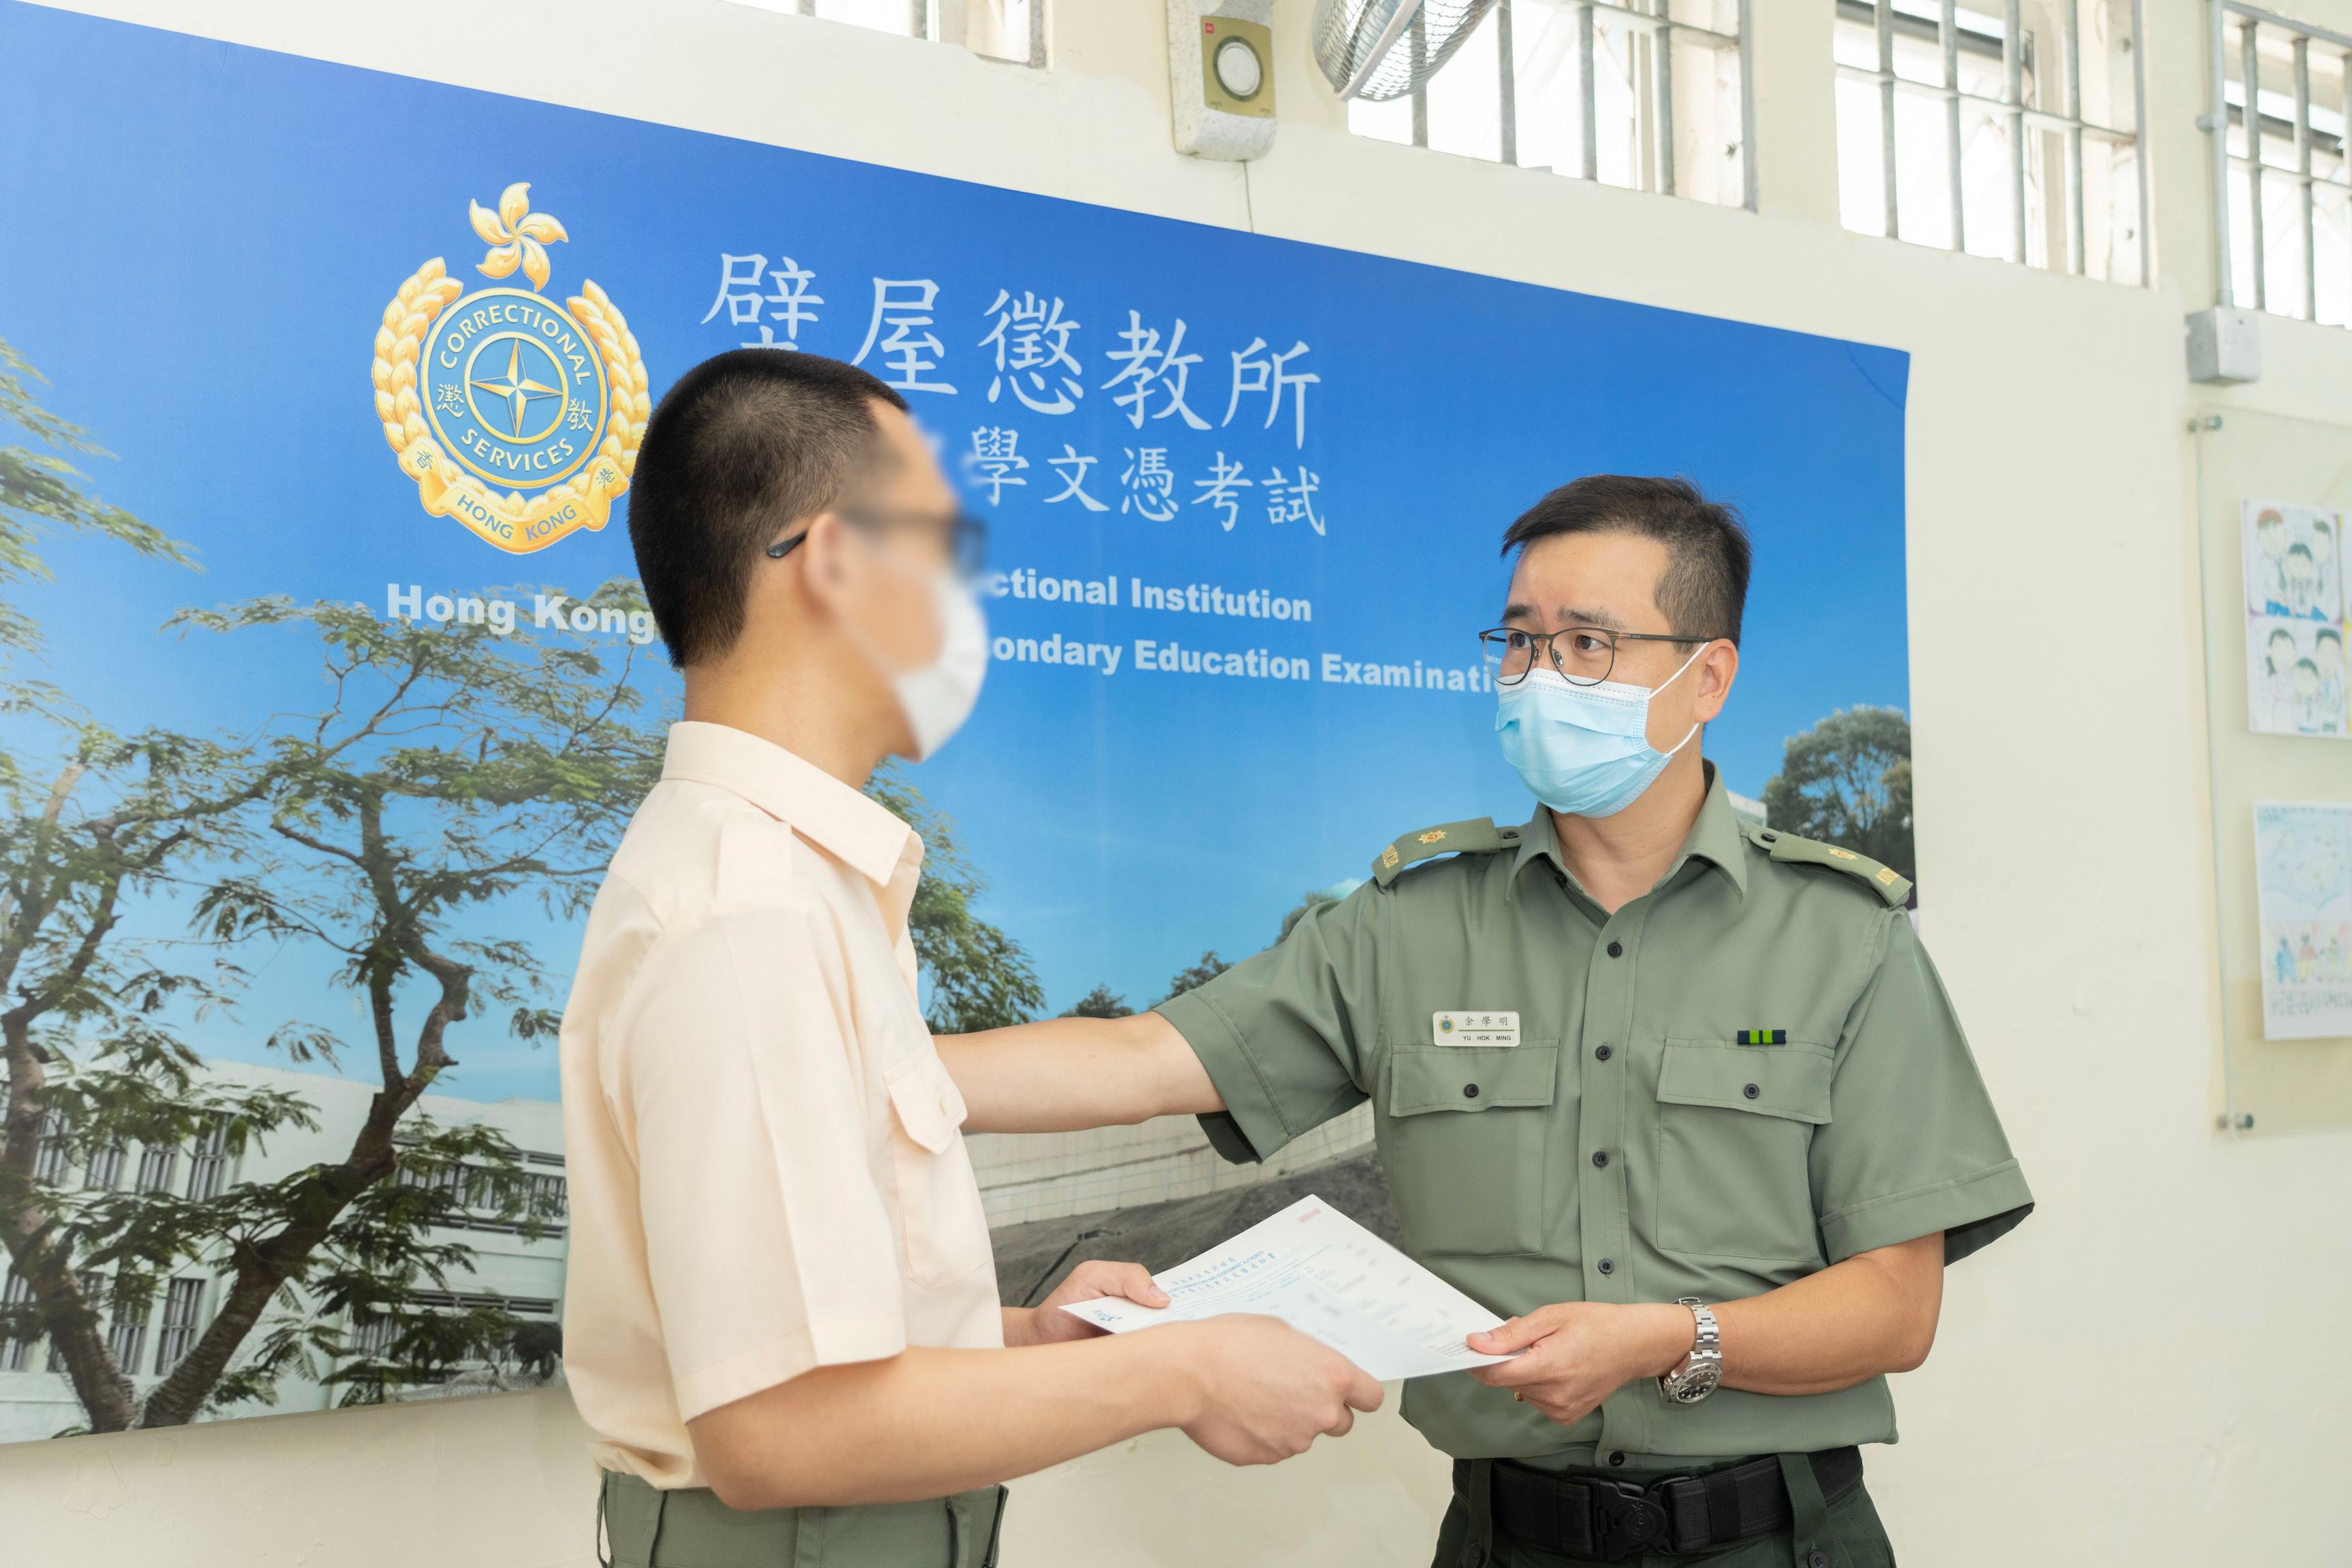 今年共有12名青少年在囚人士报考香港中学文凭考试。图示壁屋惩教所监督余学明（右）颁发香港中学文凭考试成绩通知书予青少年在囚人士小杰（化名）。